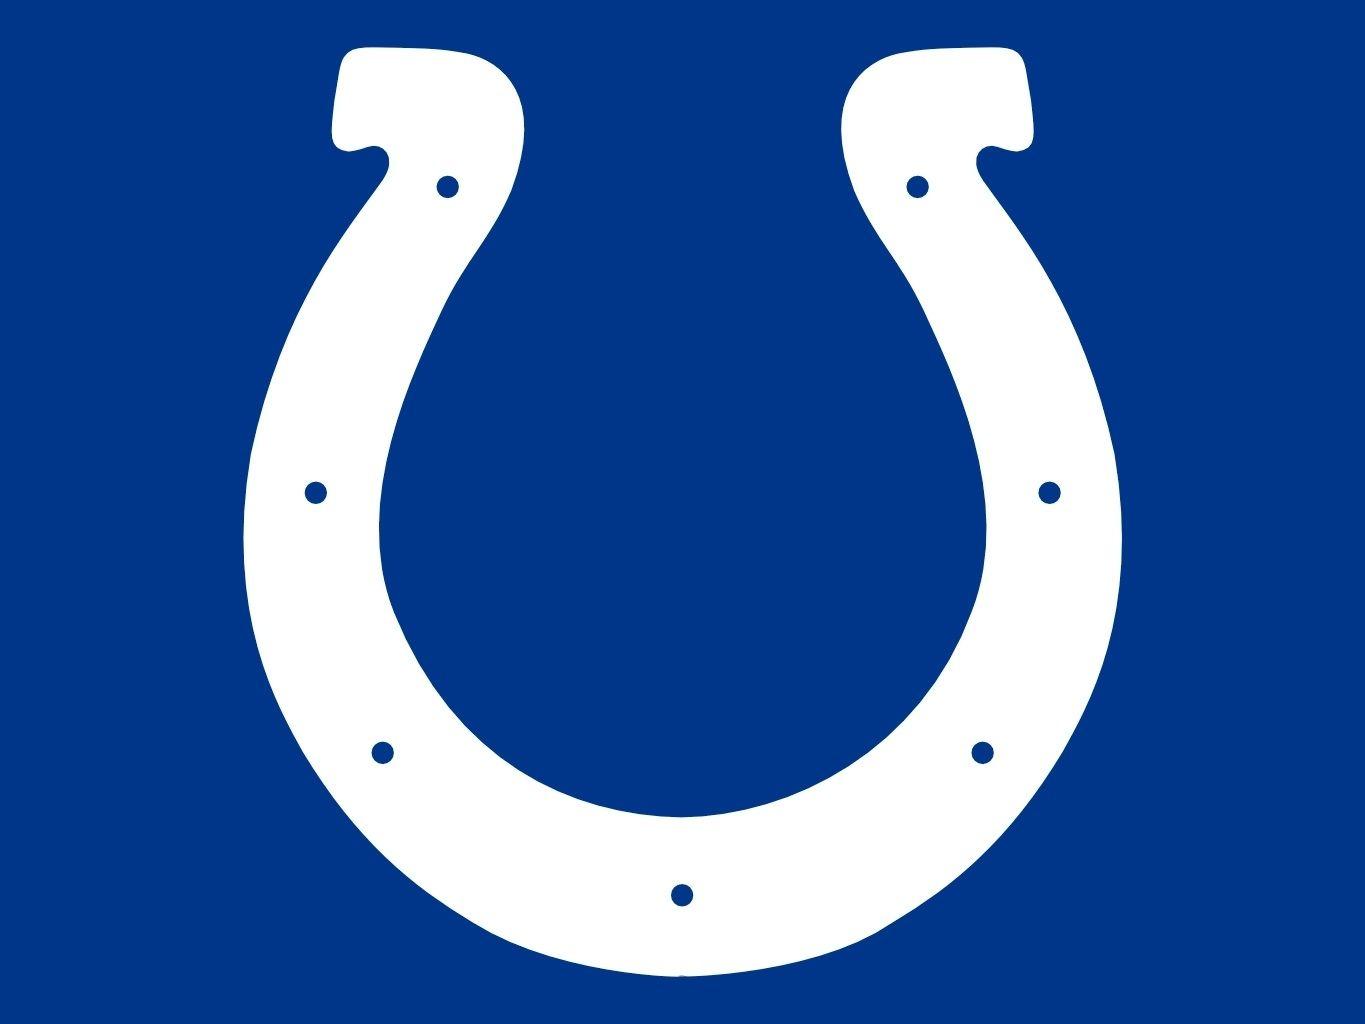 Indianapolis Colts Logo - Free Colts Logo, Download Free Clip Art, Free Clip Art on Clipart ...